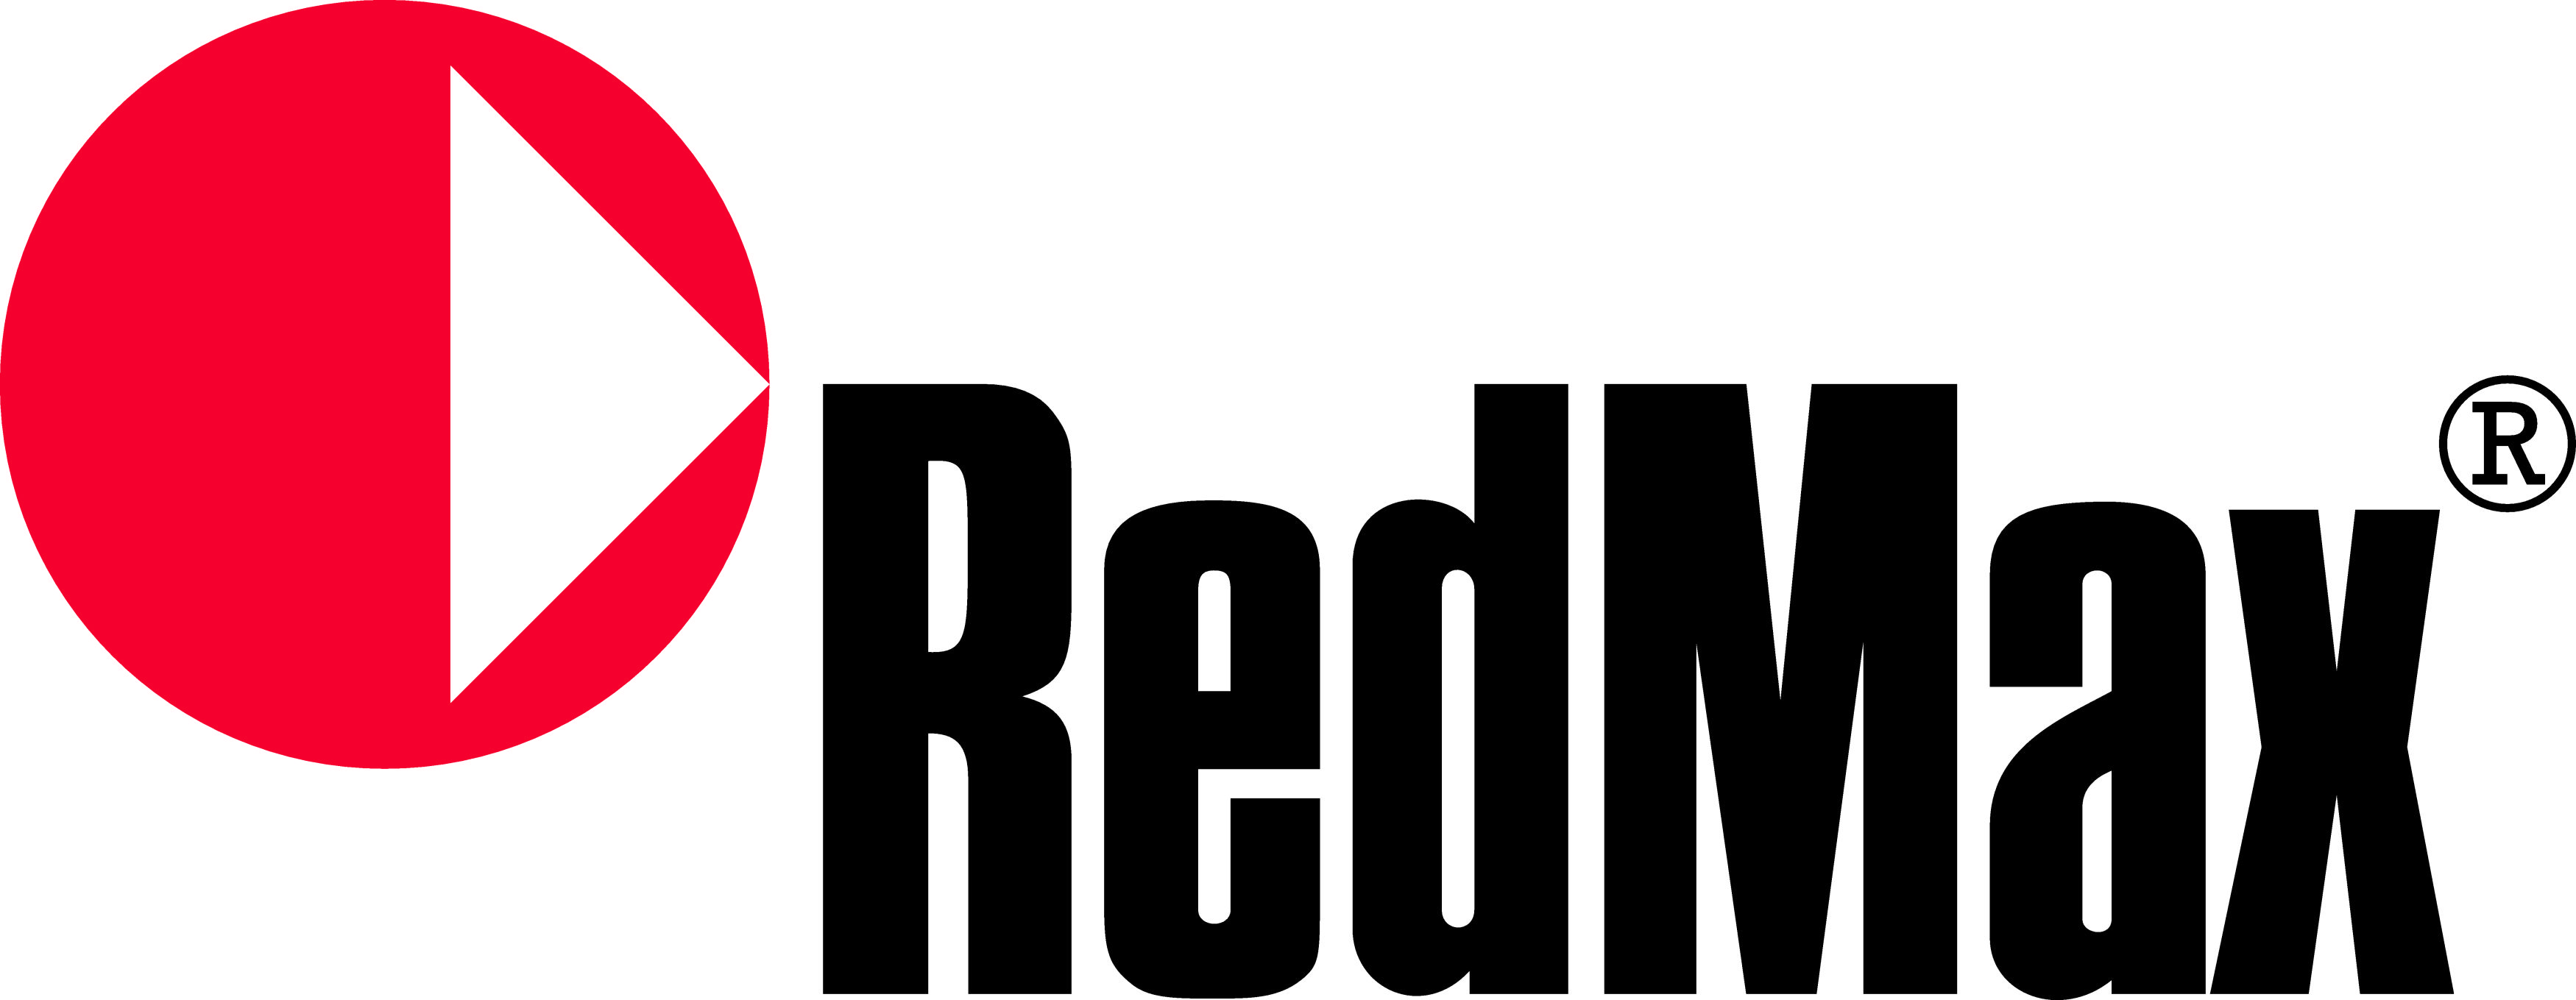 Redemax Logo photo - 1